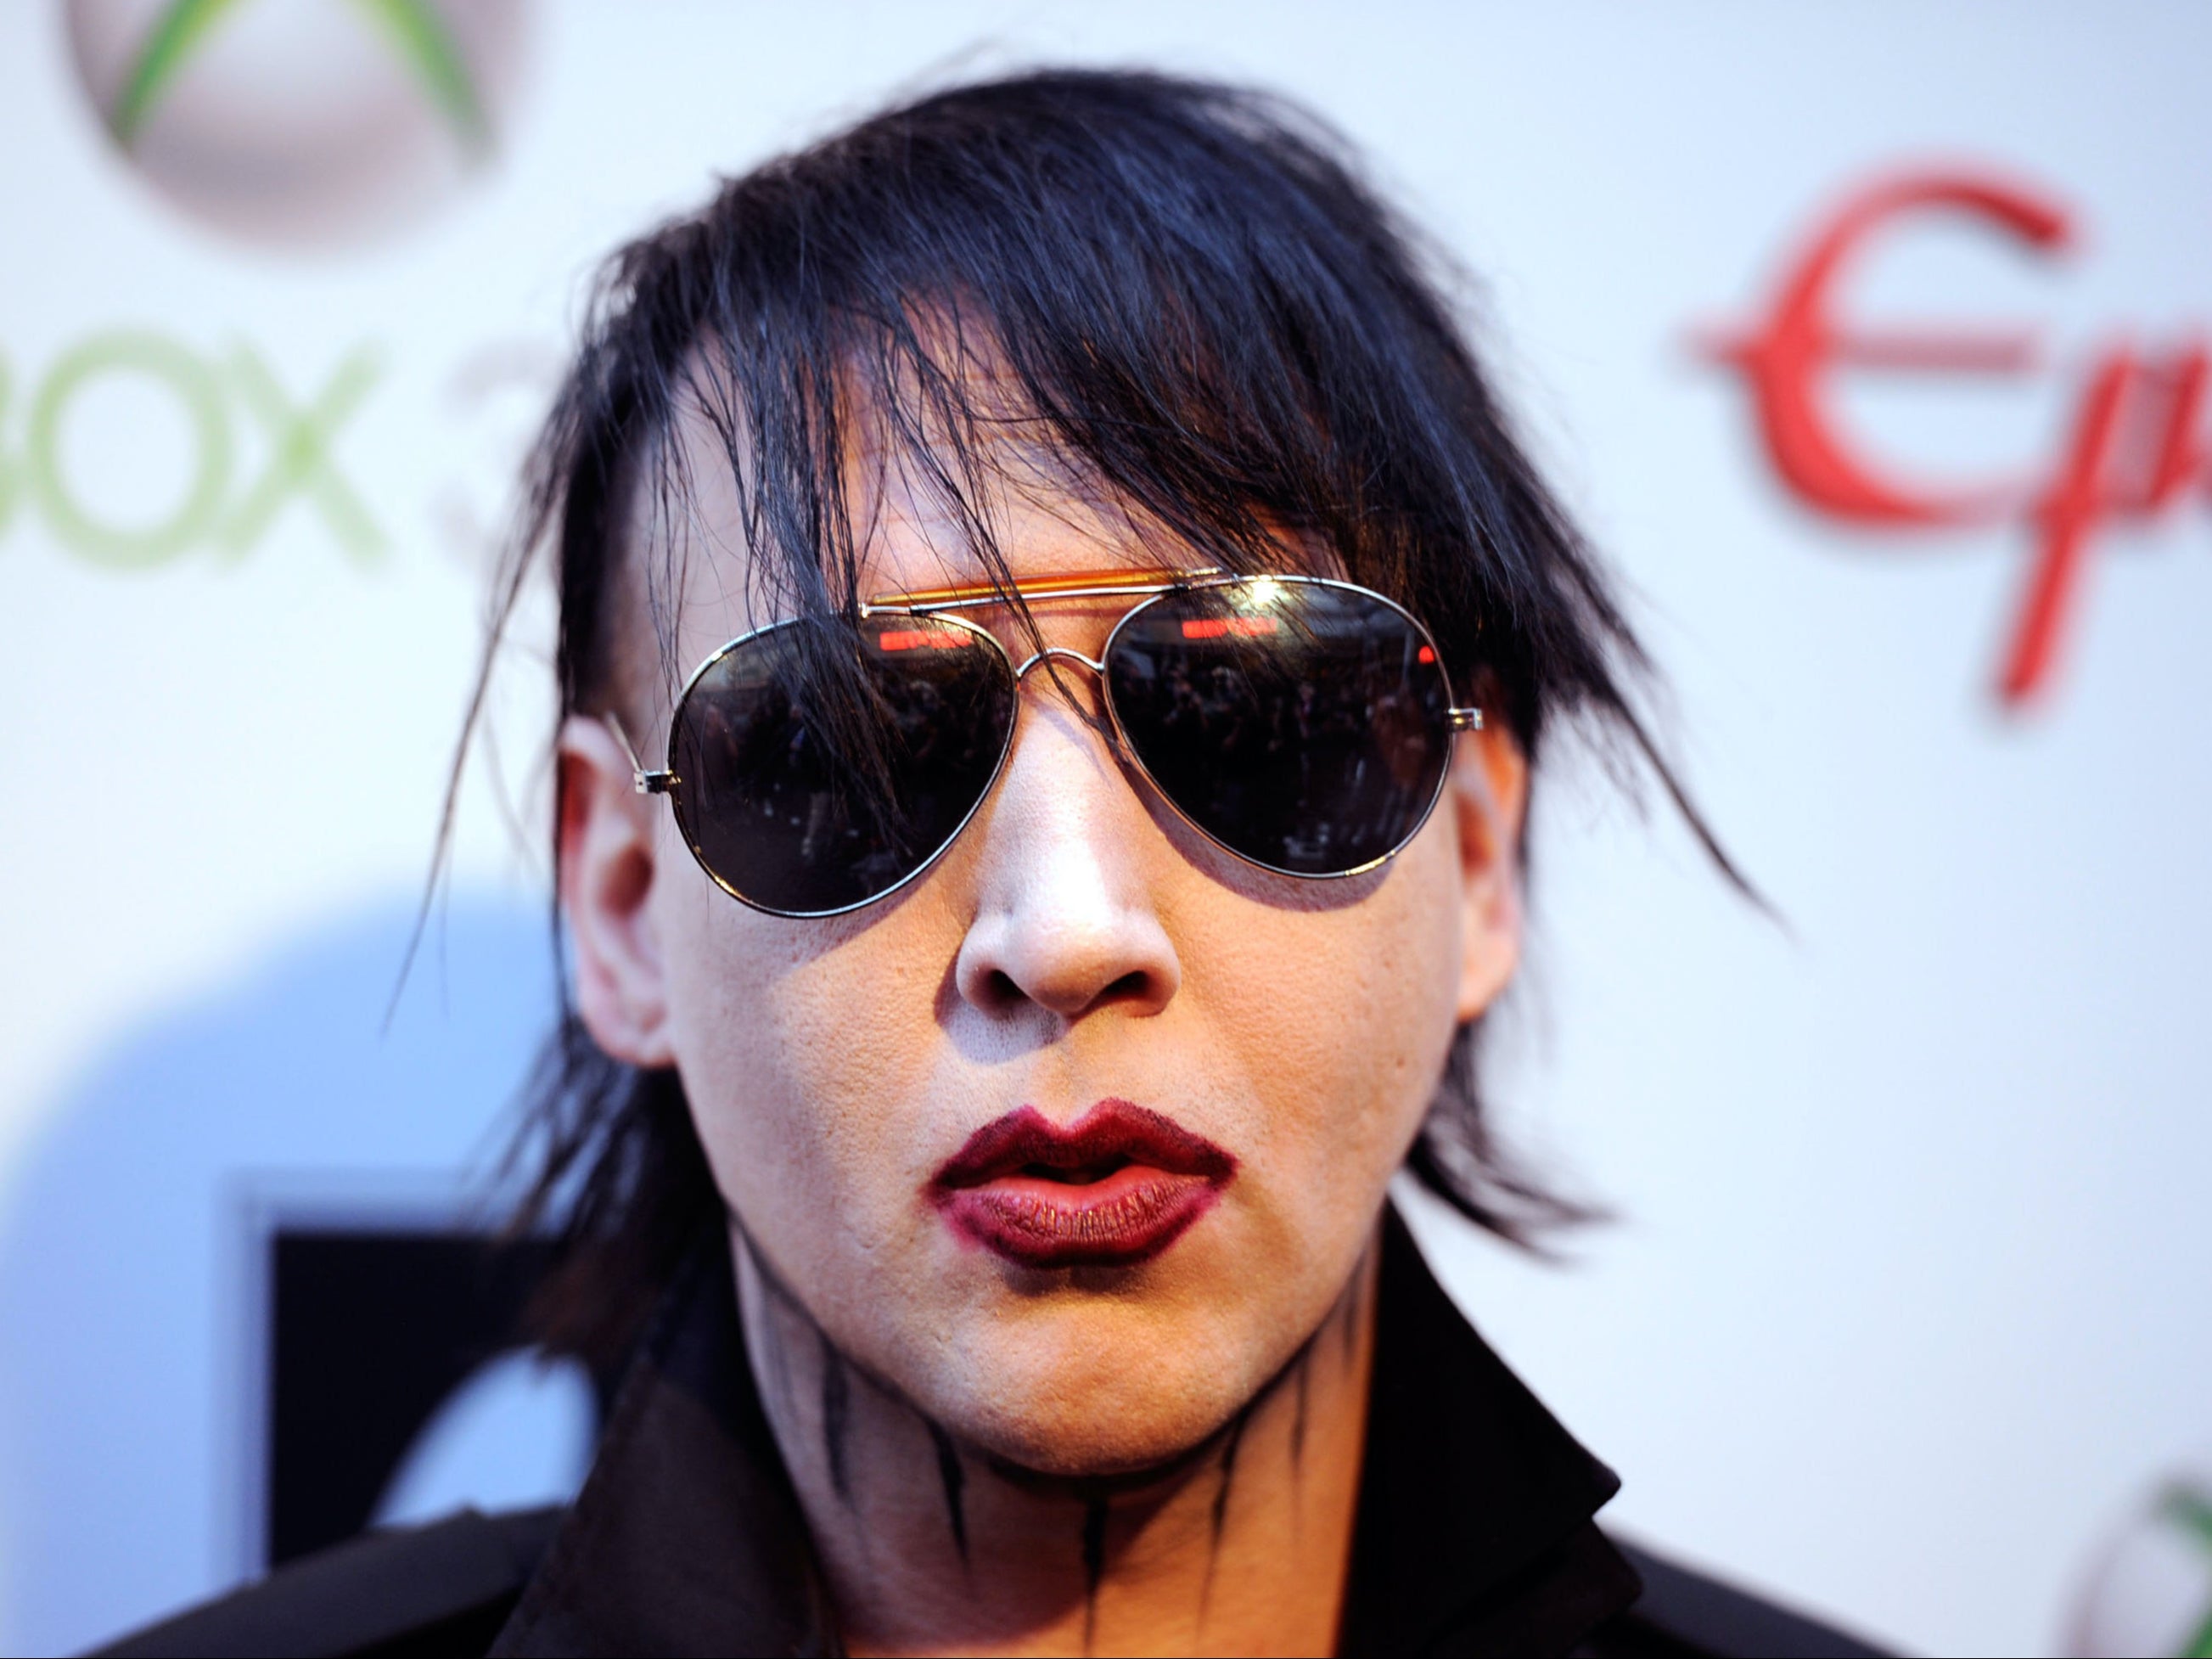 Marilyn Manson ha sido acusada de abusar de varias mujeres mientras estaba en relación con ellas